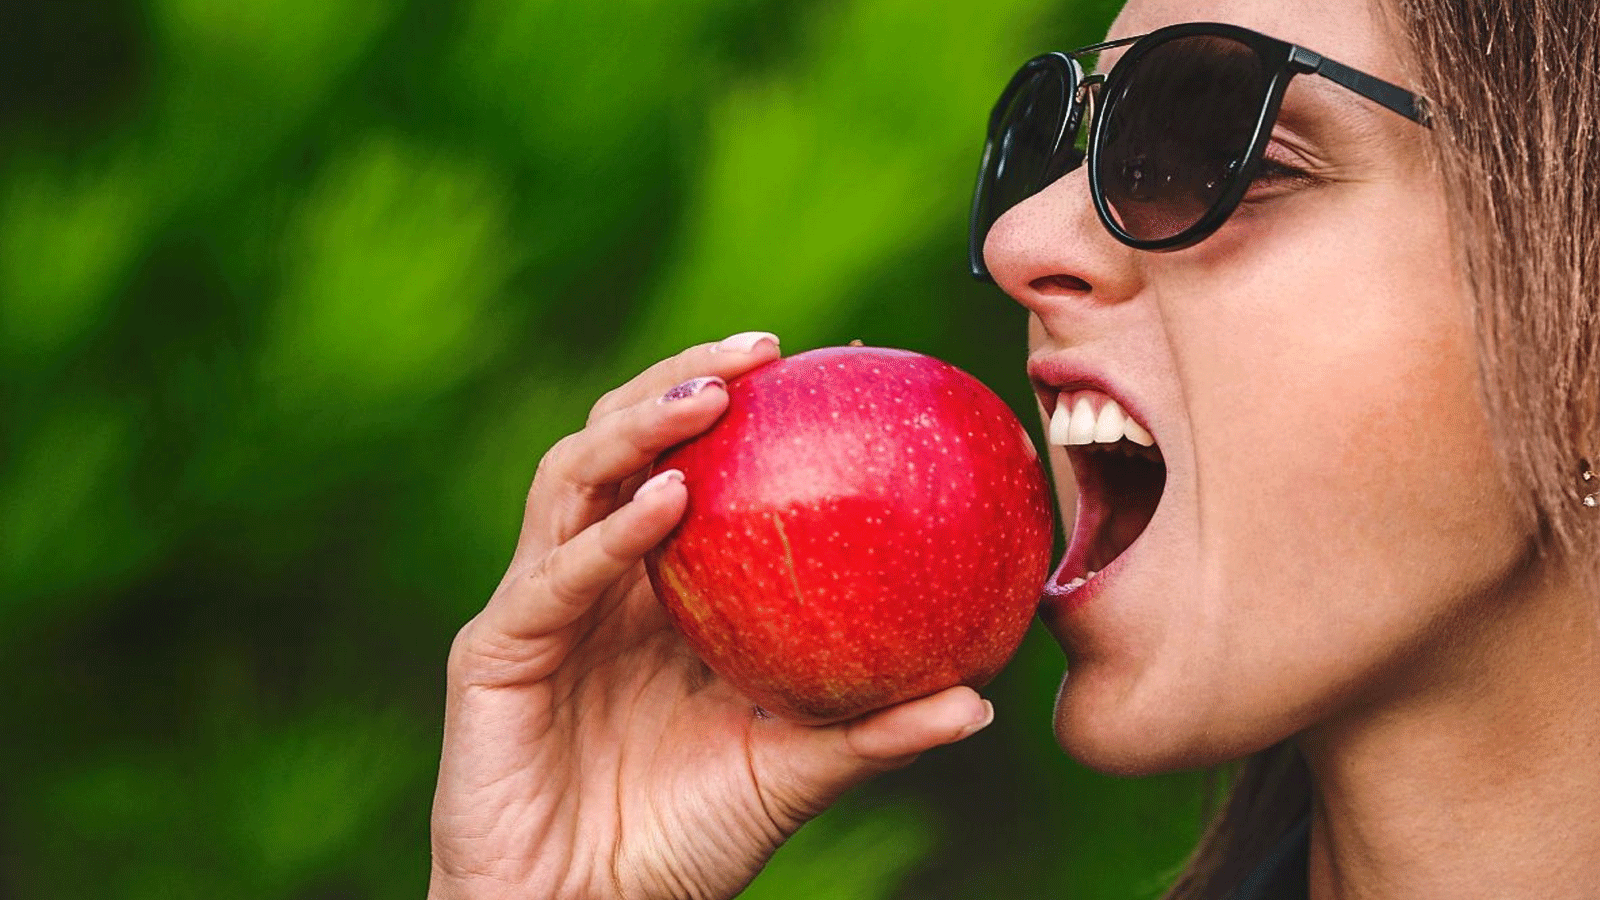 التفاح فاكهة متعددة الفوائد الصحية